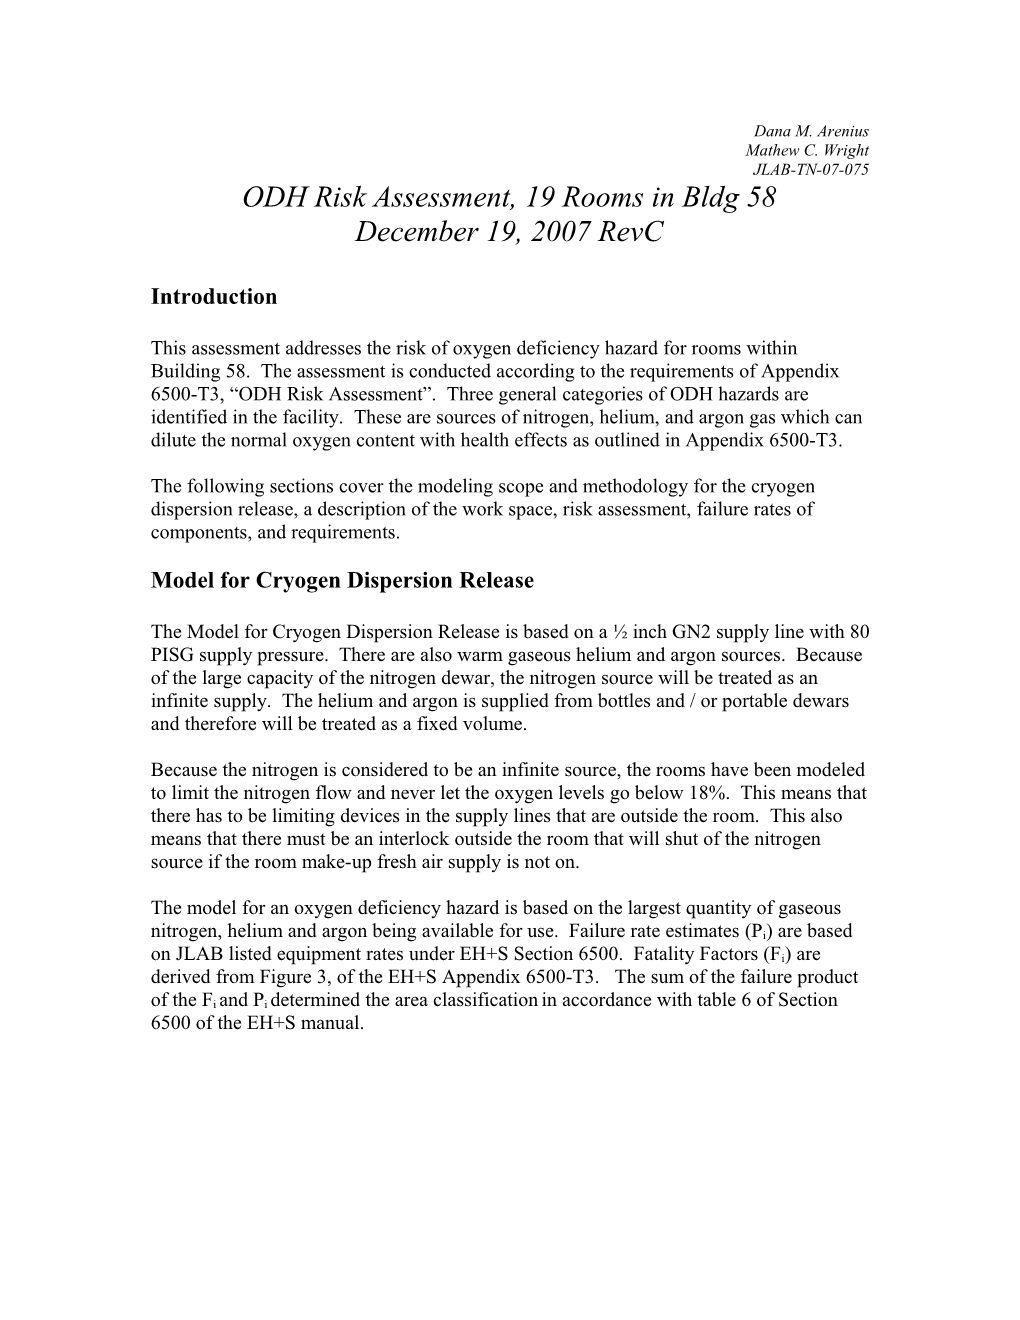 ODH Risk Assessment, 19 Rooms in Bldg 58